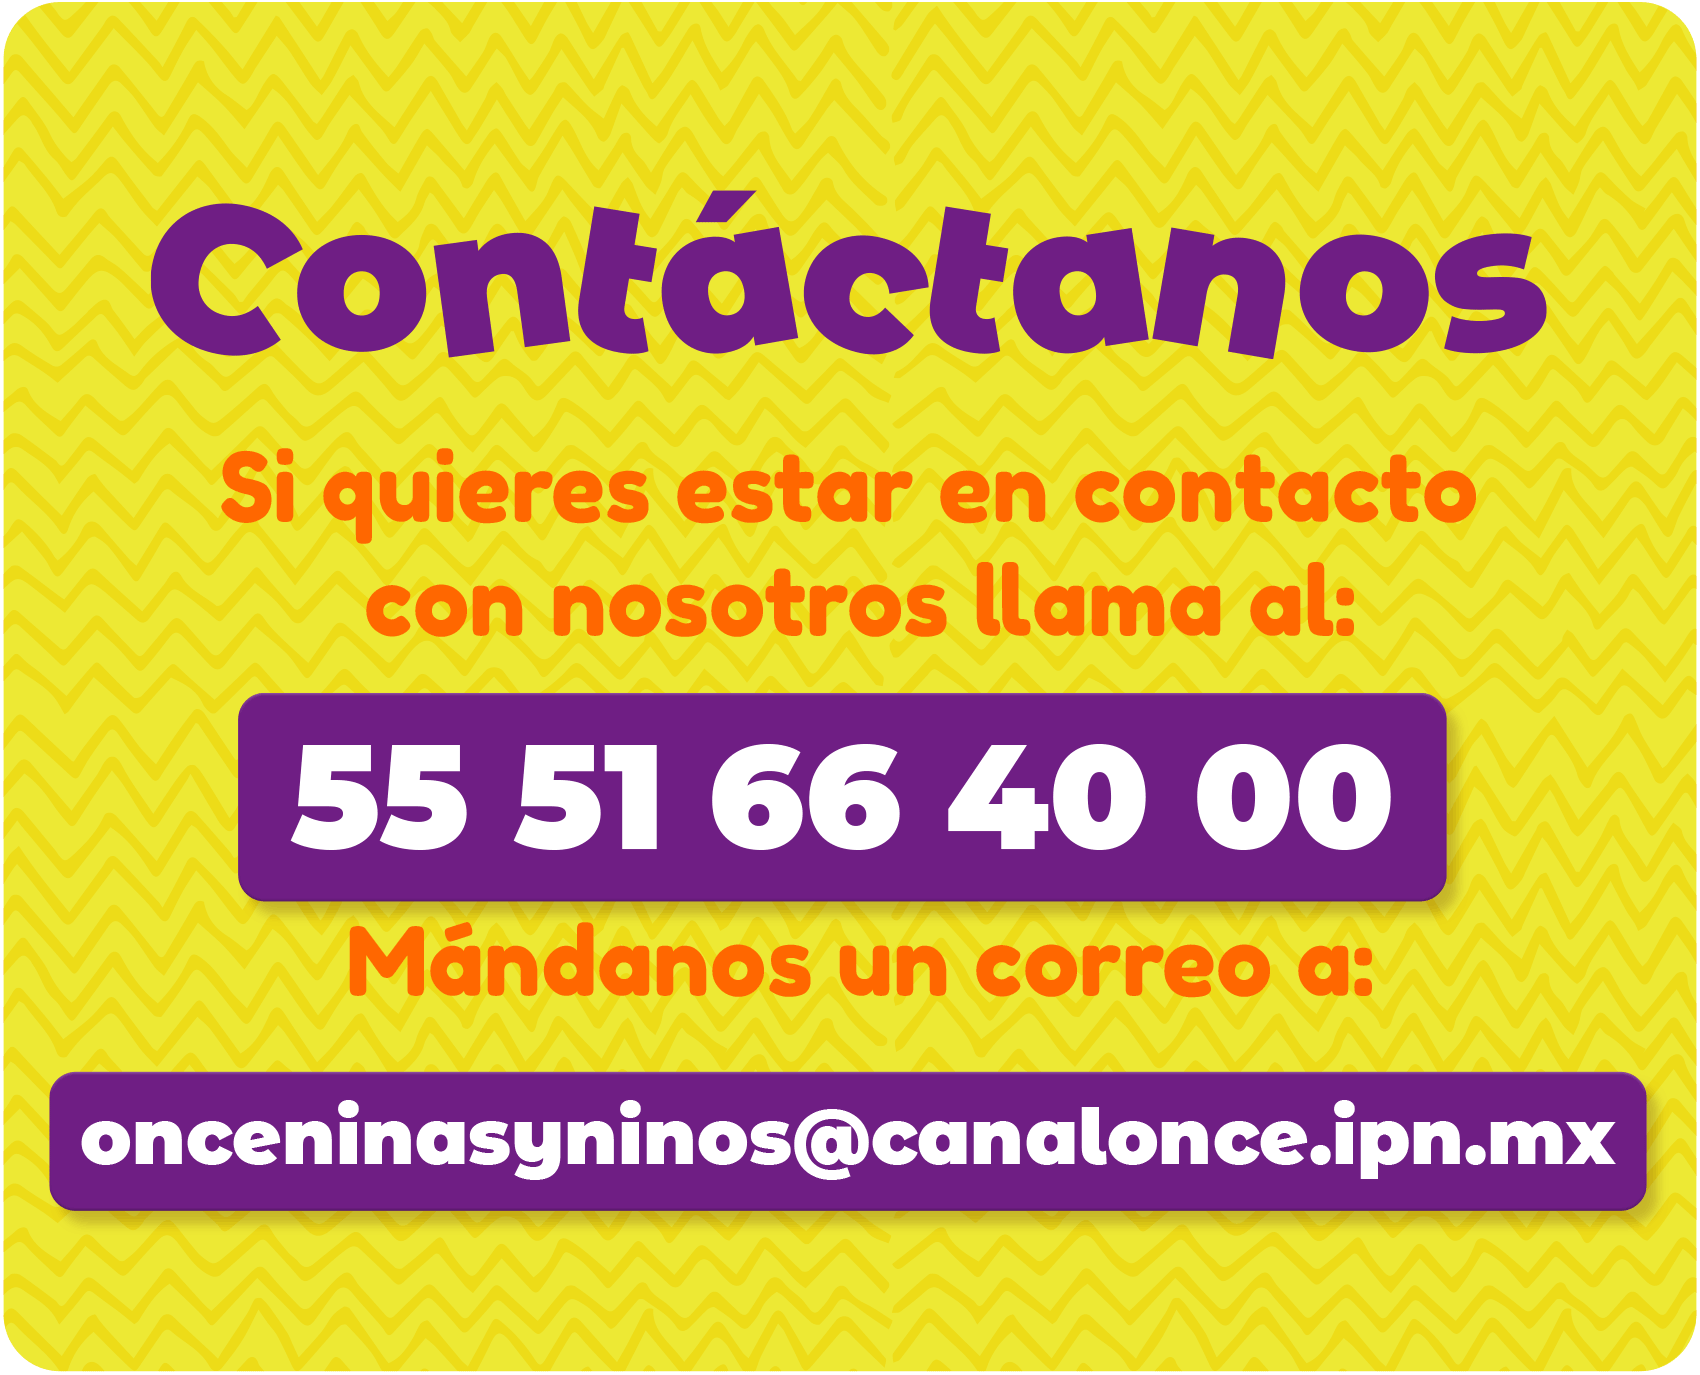 Contáctanos 
Si quieres estar en contacto con nosotros llama al 5551664000 
Mándanos un correo a onceninasyninos@canalonce.ipn.mx 
